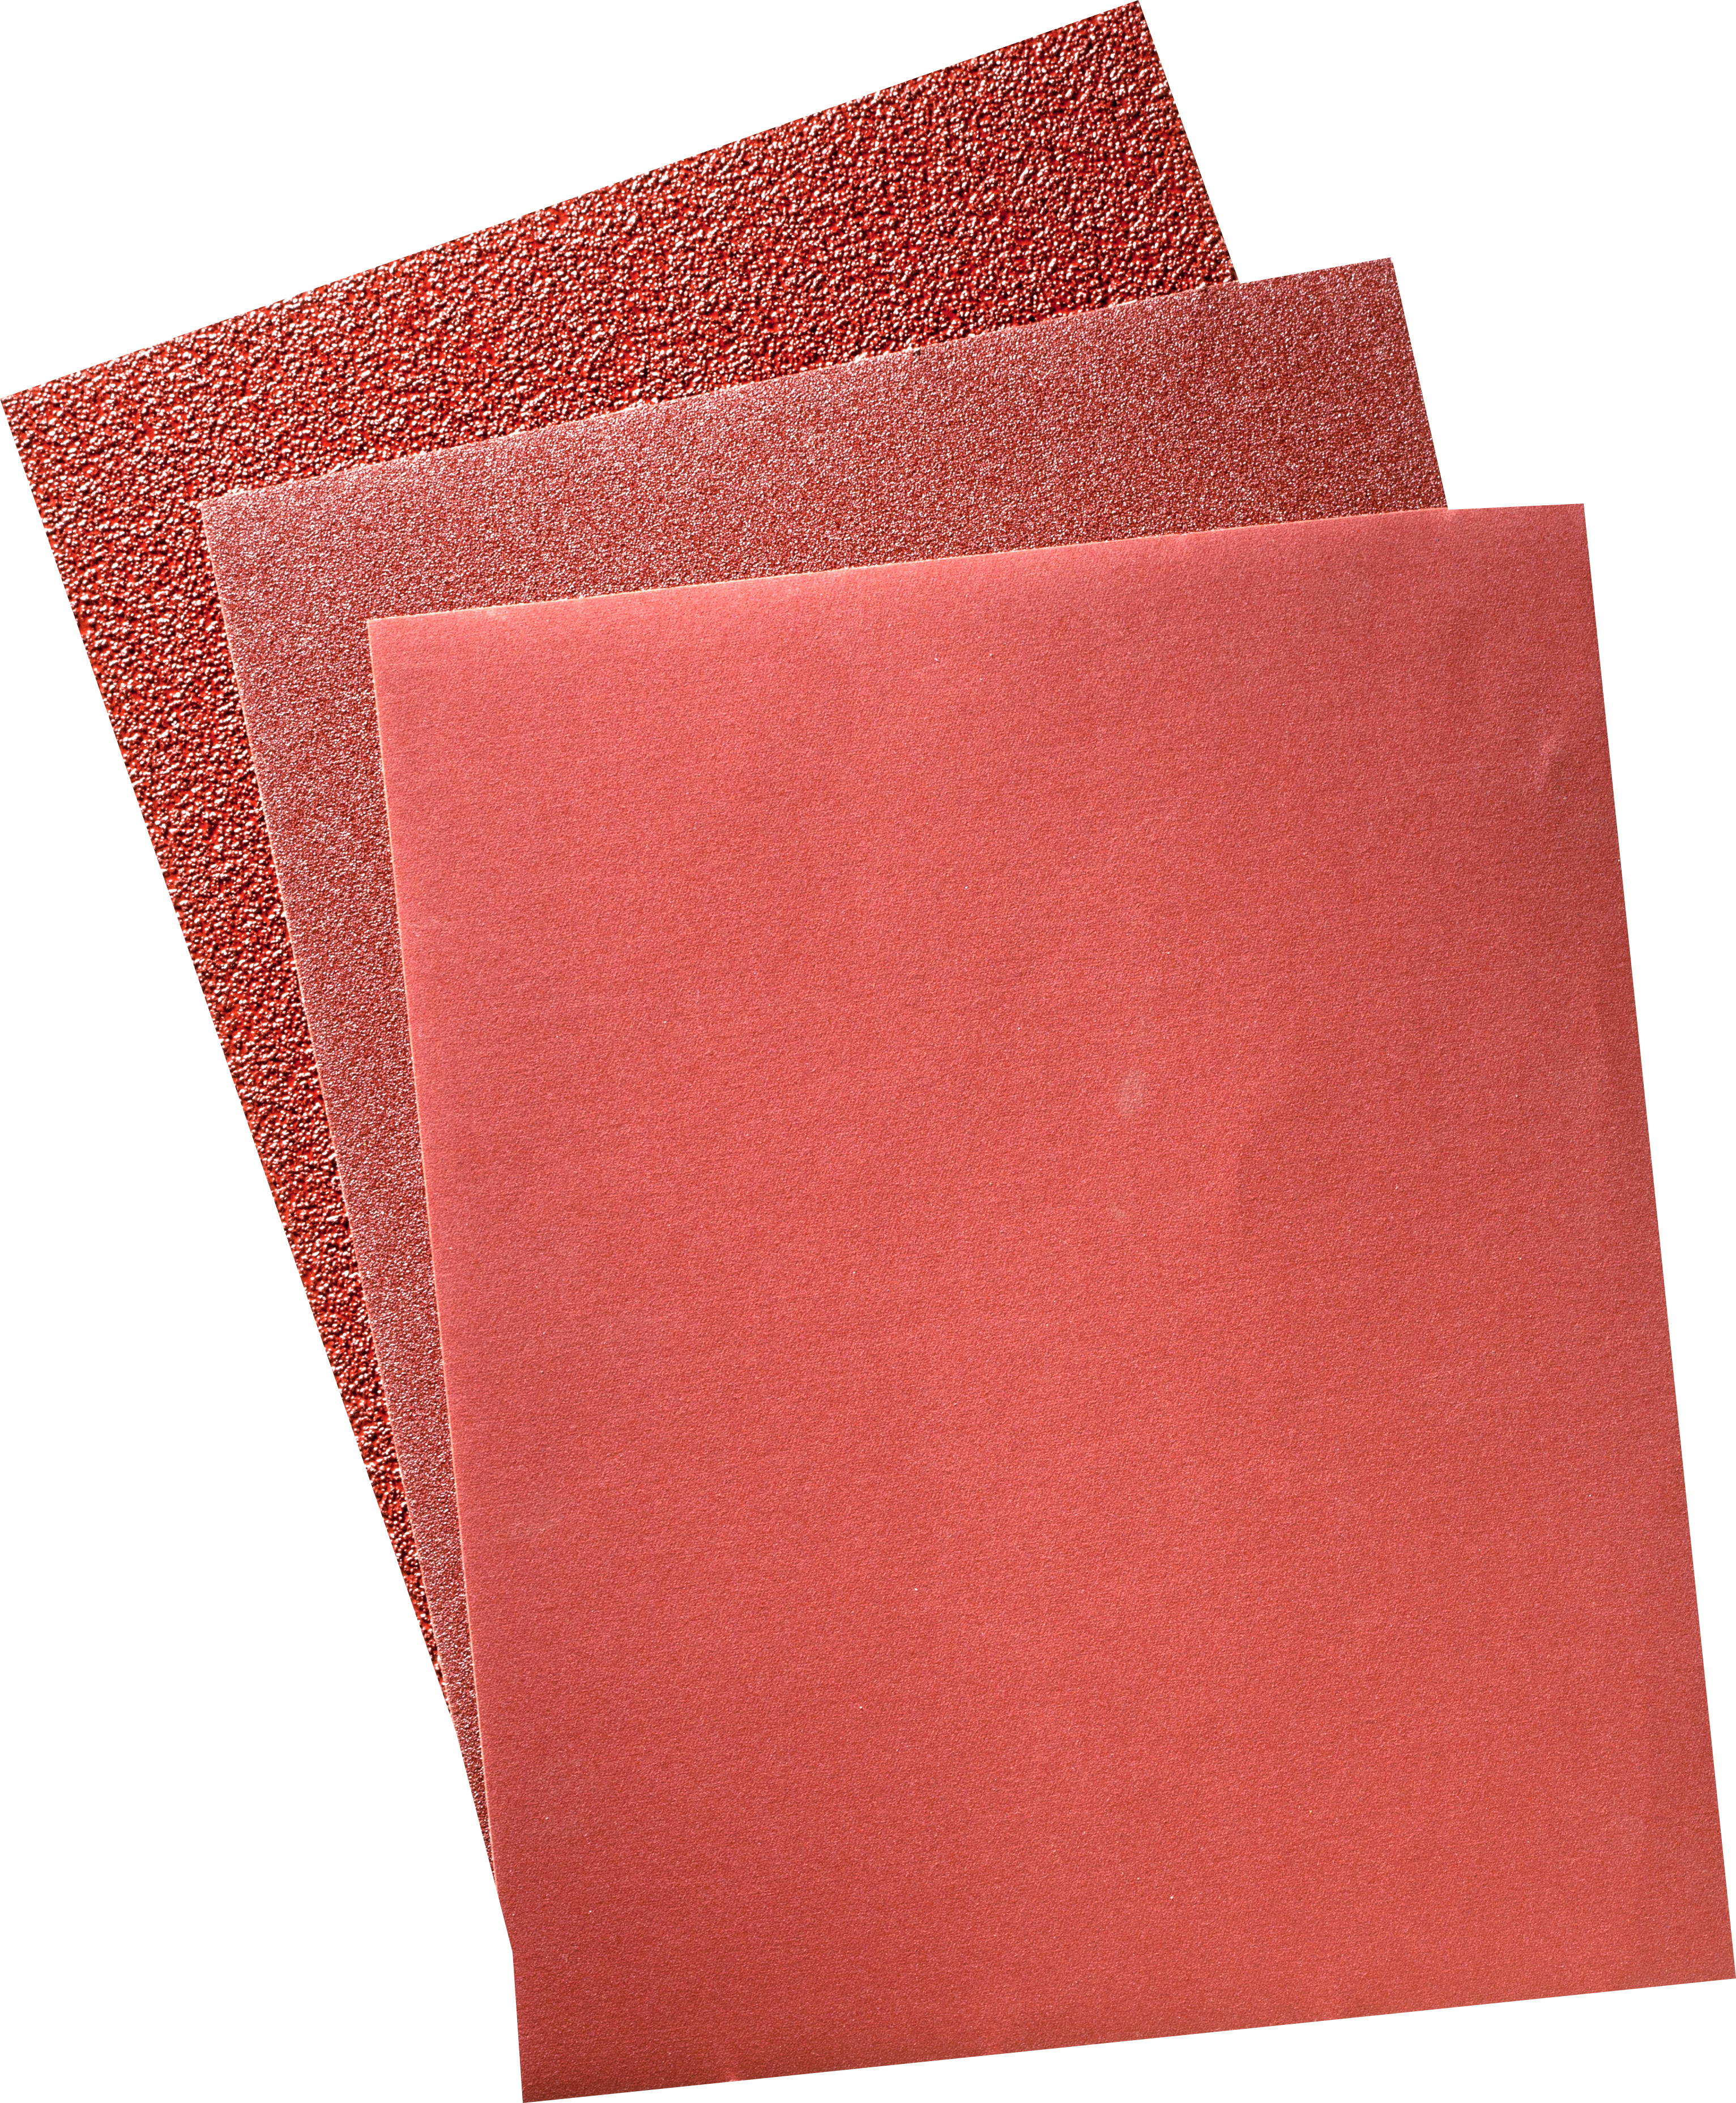 9 X 11 DAF 240X - Sandpaper Sheets